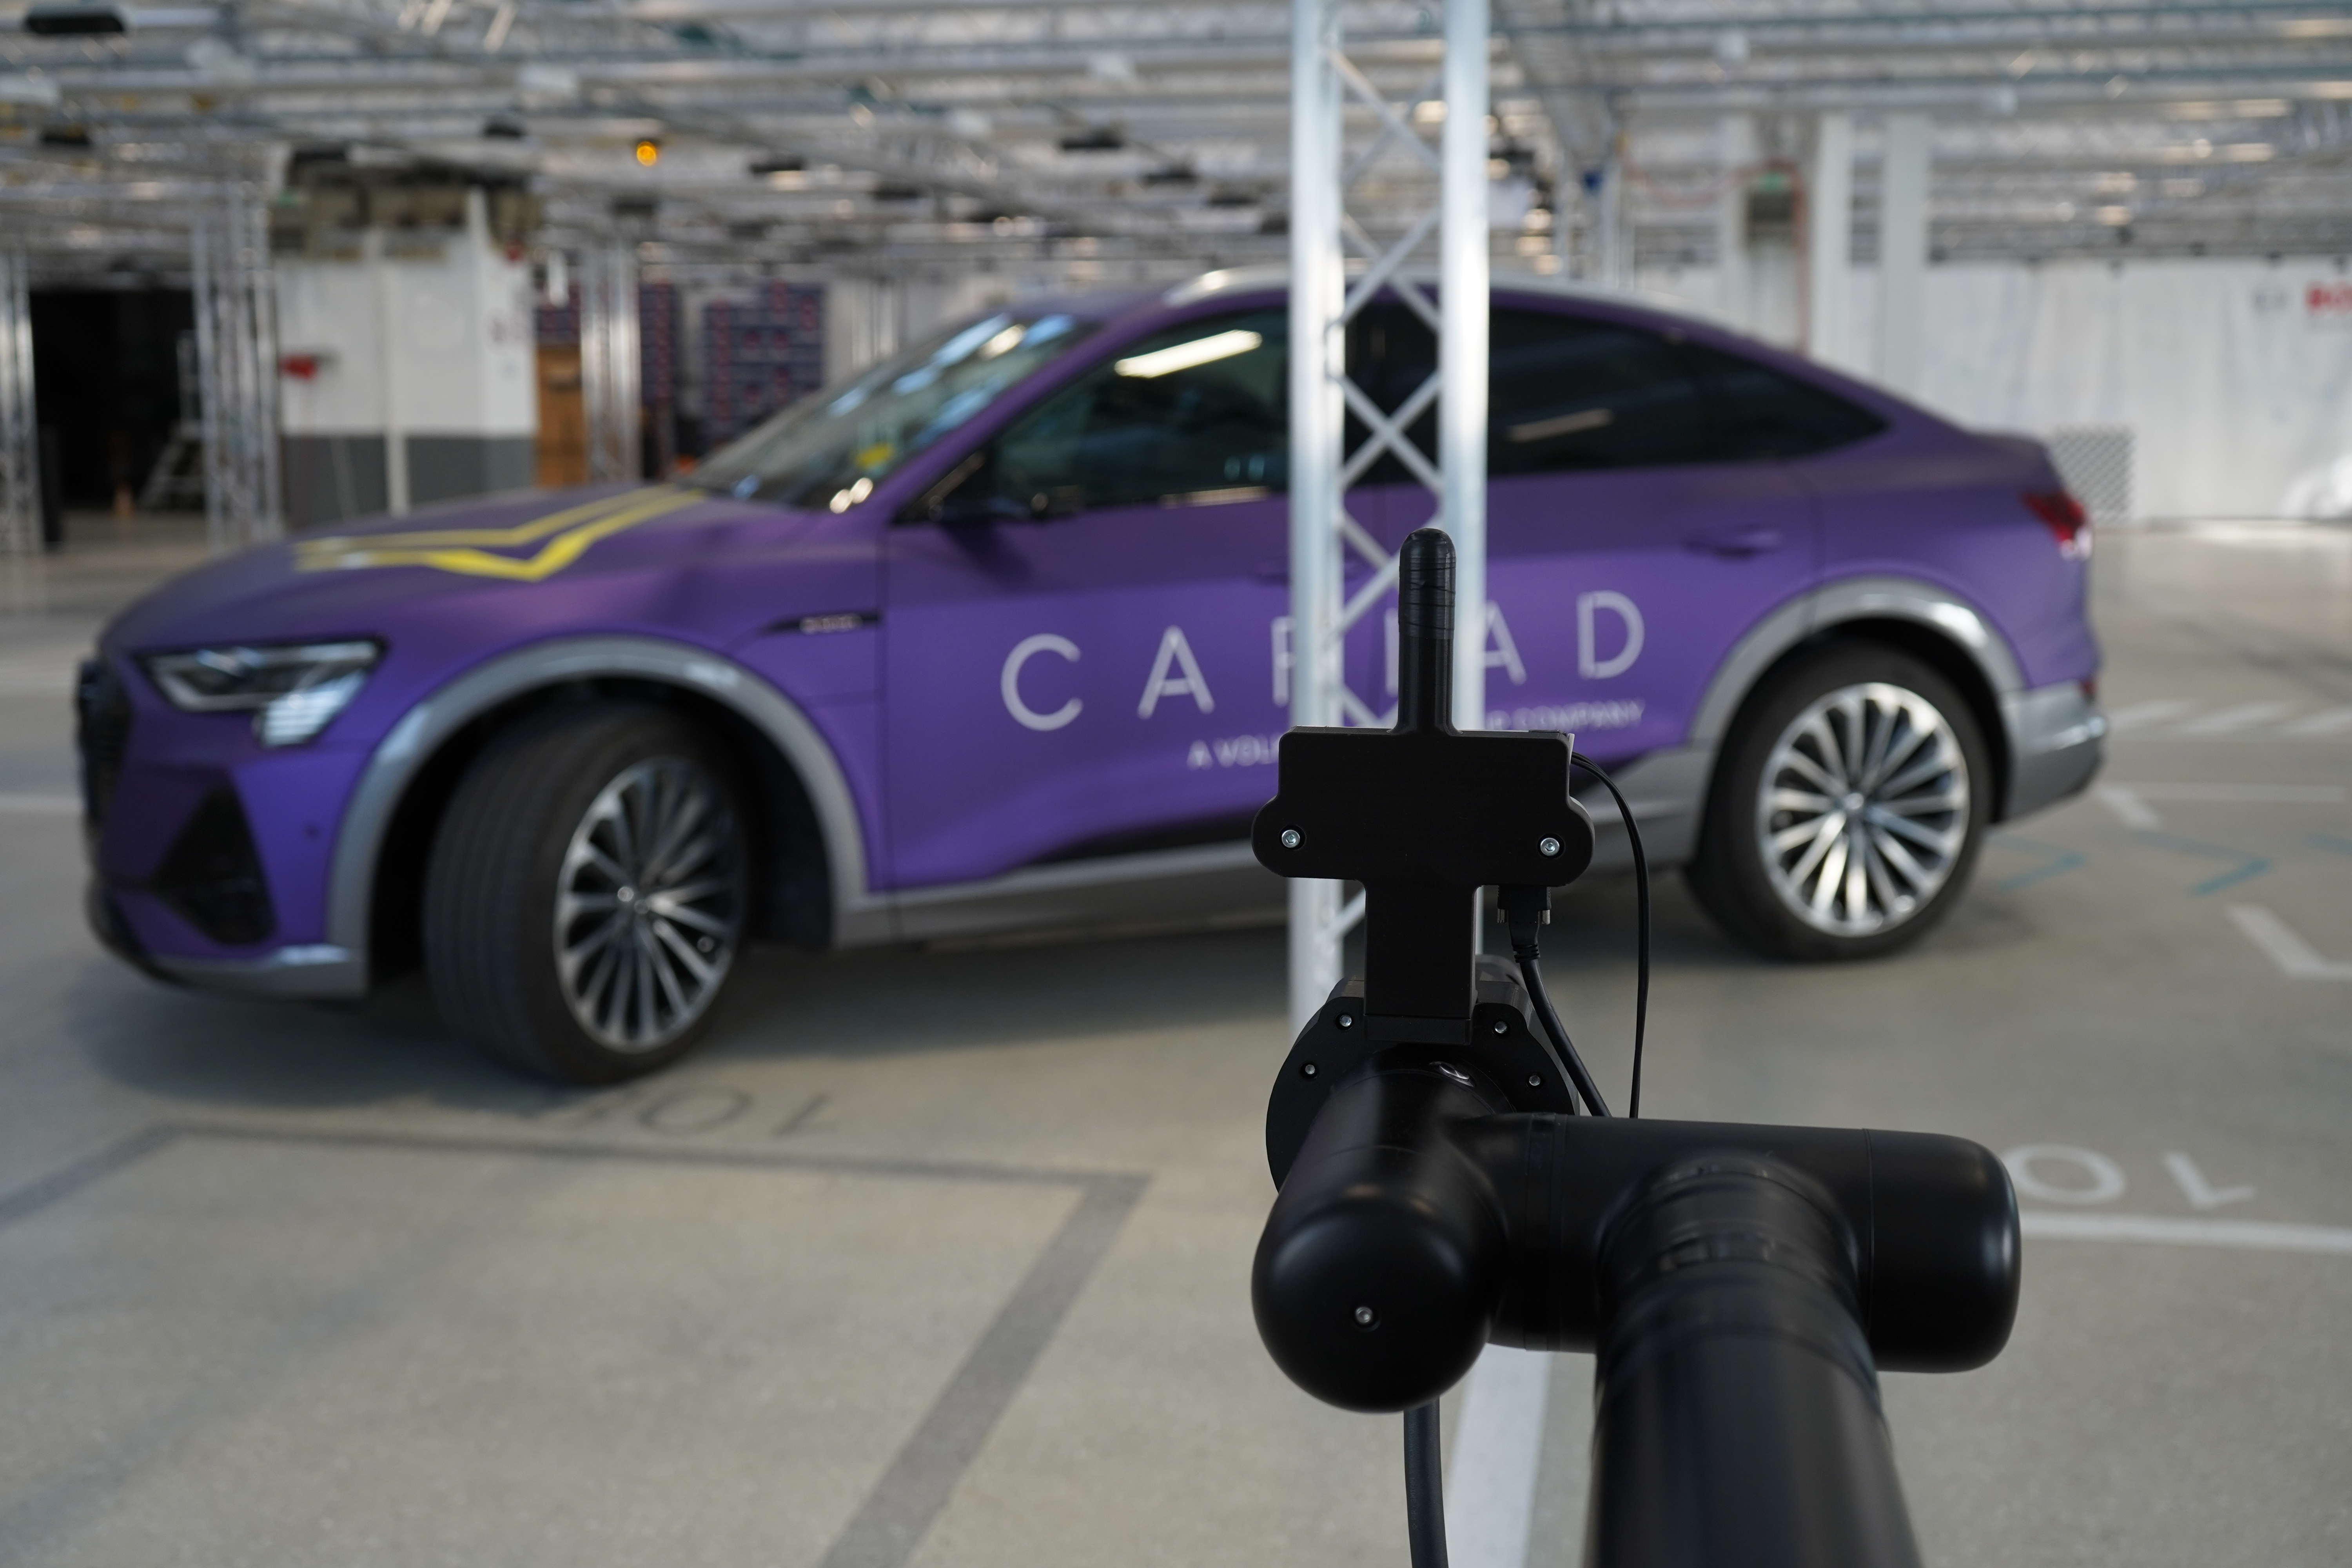 Servizio di ricarica autonoma per i veicoli elettrici grazie alla collaborazione tra Bosch e Cariad, consociata di VW 